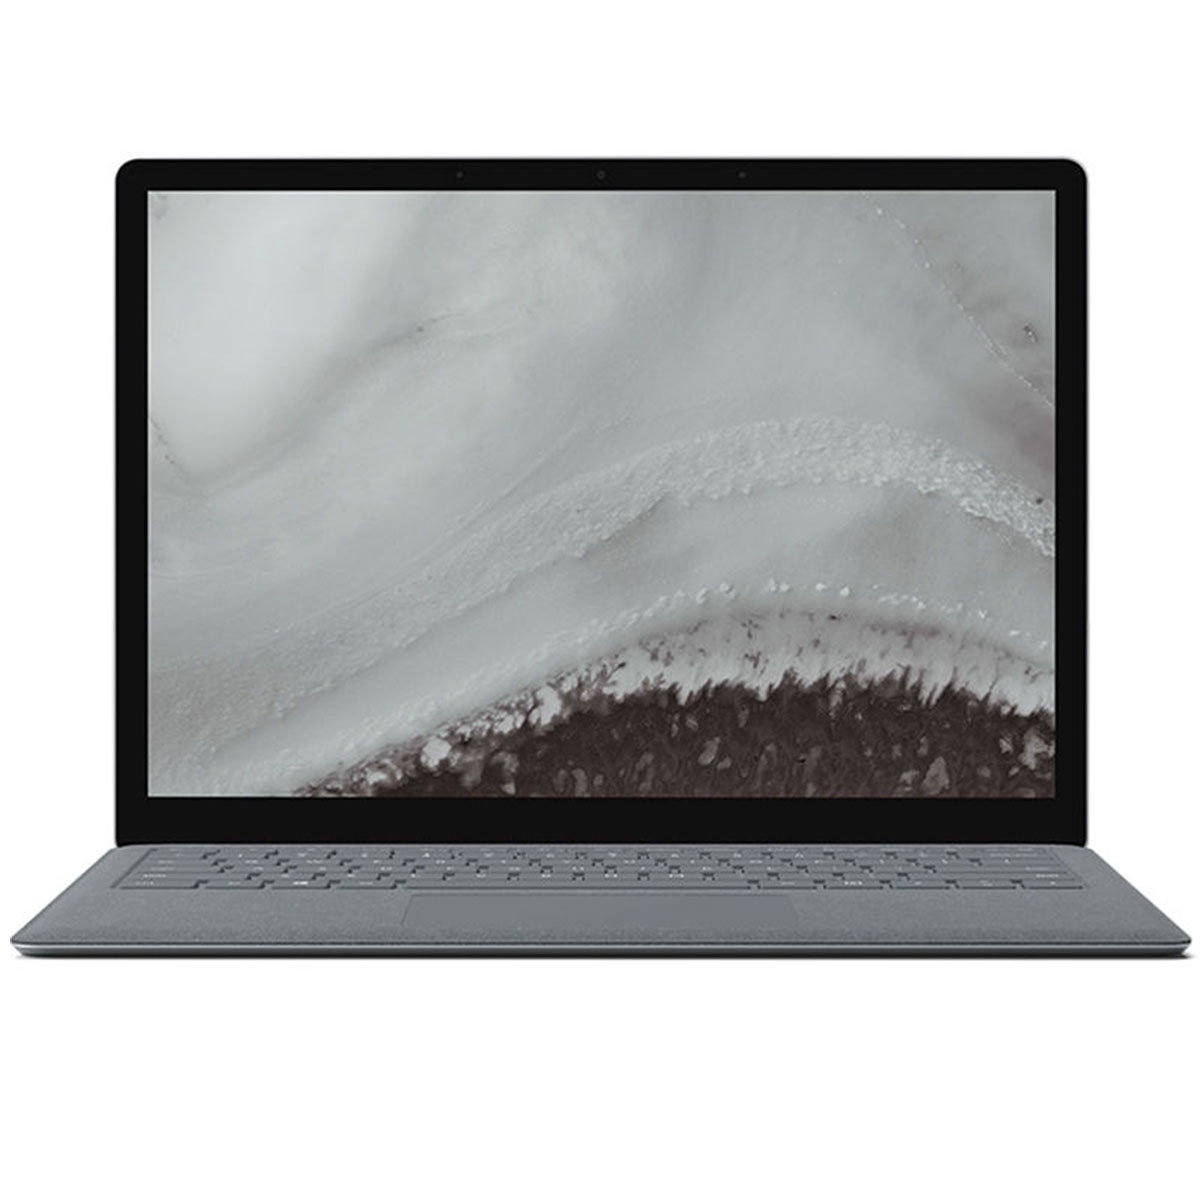 Microsoft Surface Laptop (1st Gen) Intel Core i5 7th Gen 8GB RAM 